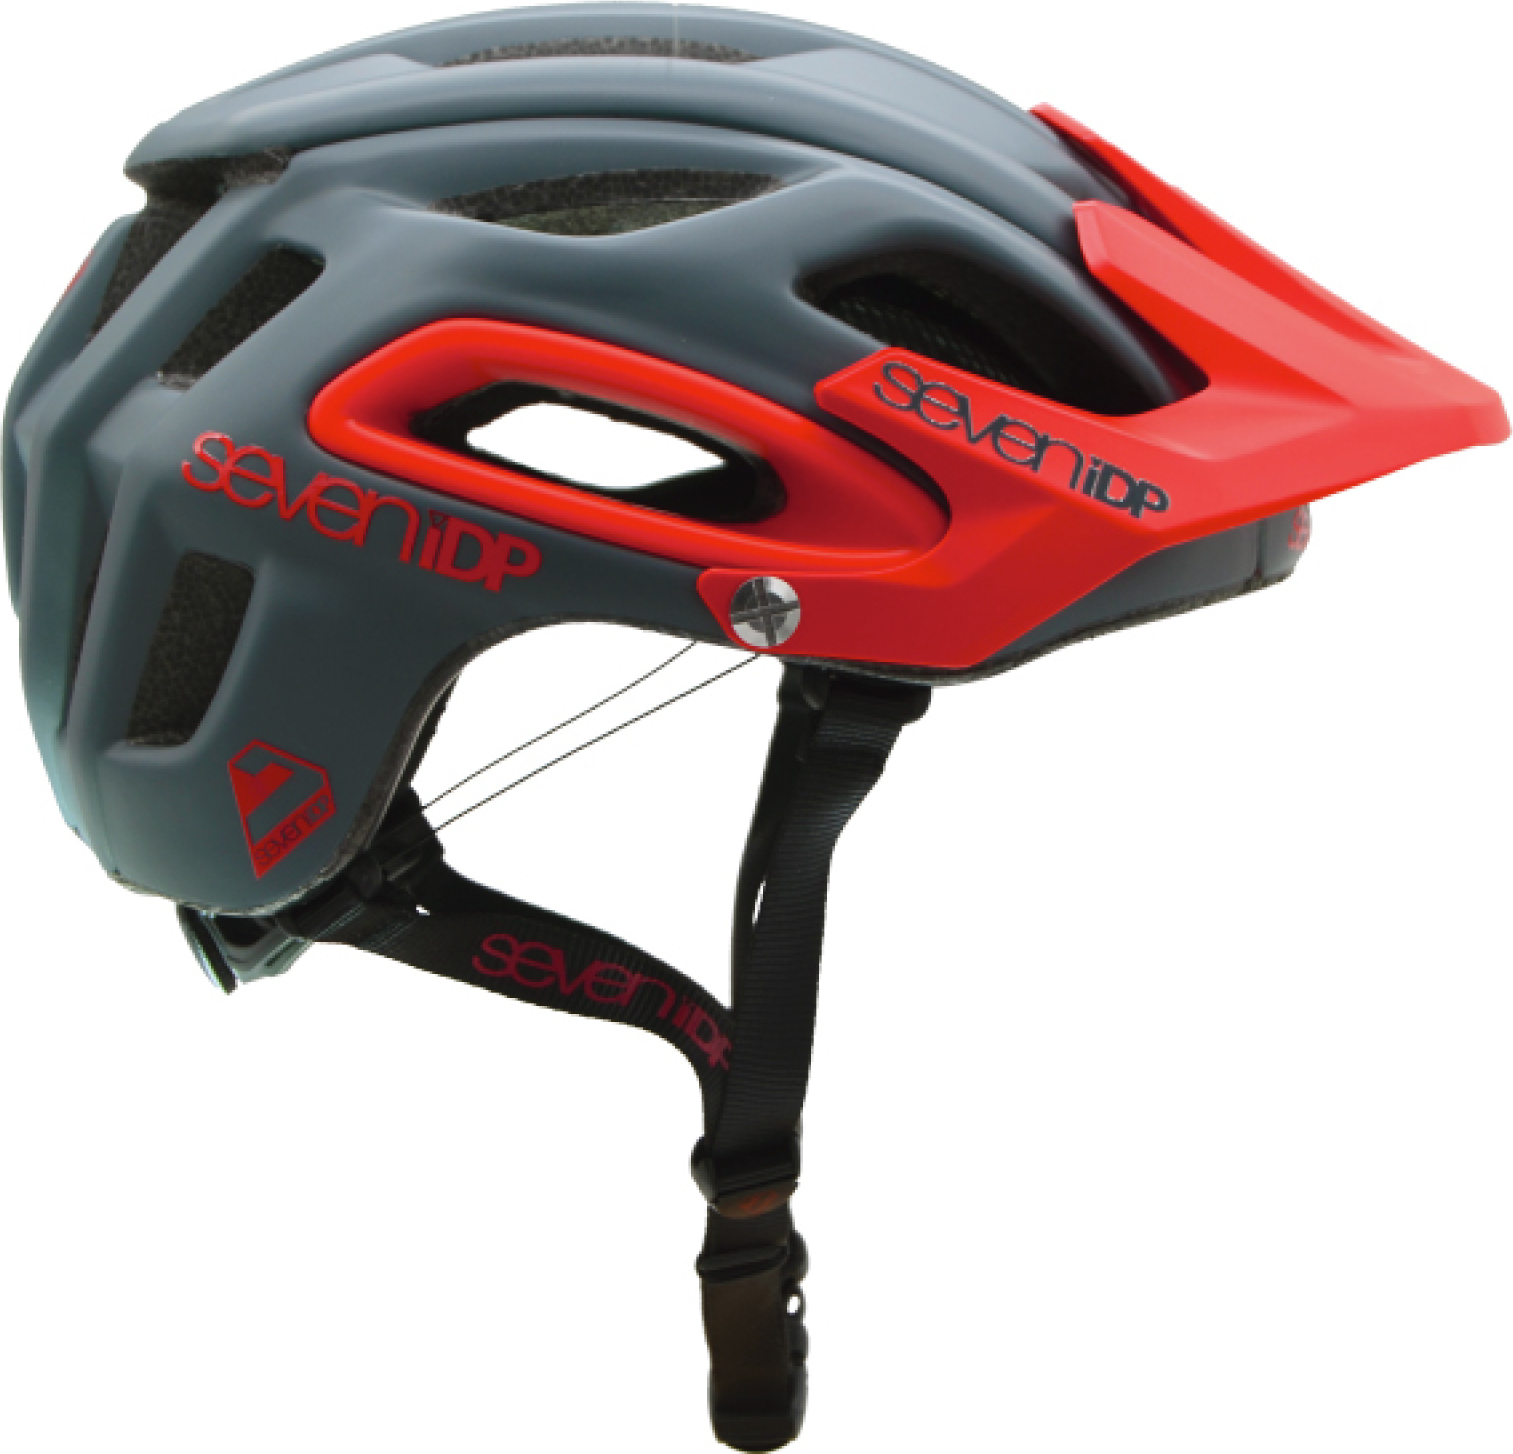 7 iDP M2 BOA Helmet 2019 Mountain Bike Enduro MTB Seven Protection Cycling 